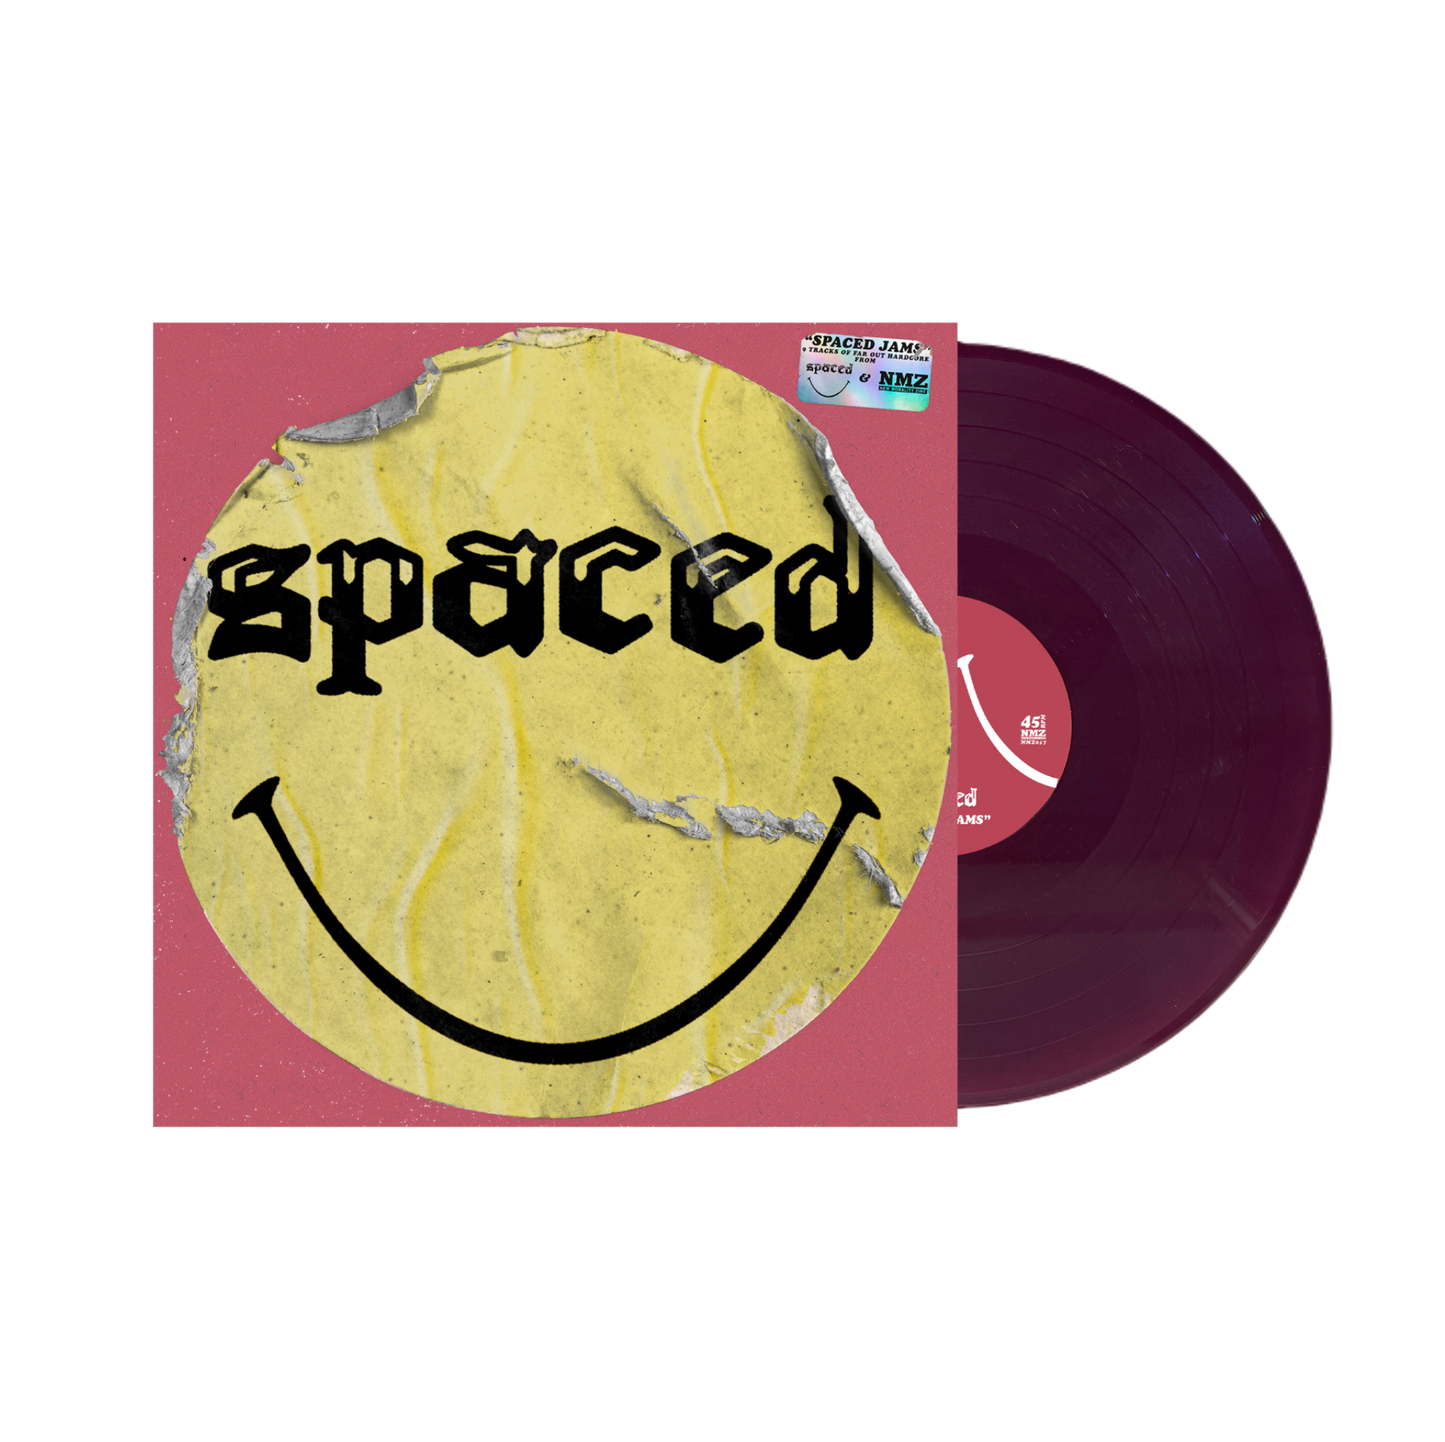 Spaced  "Spaced Jams" LP